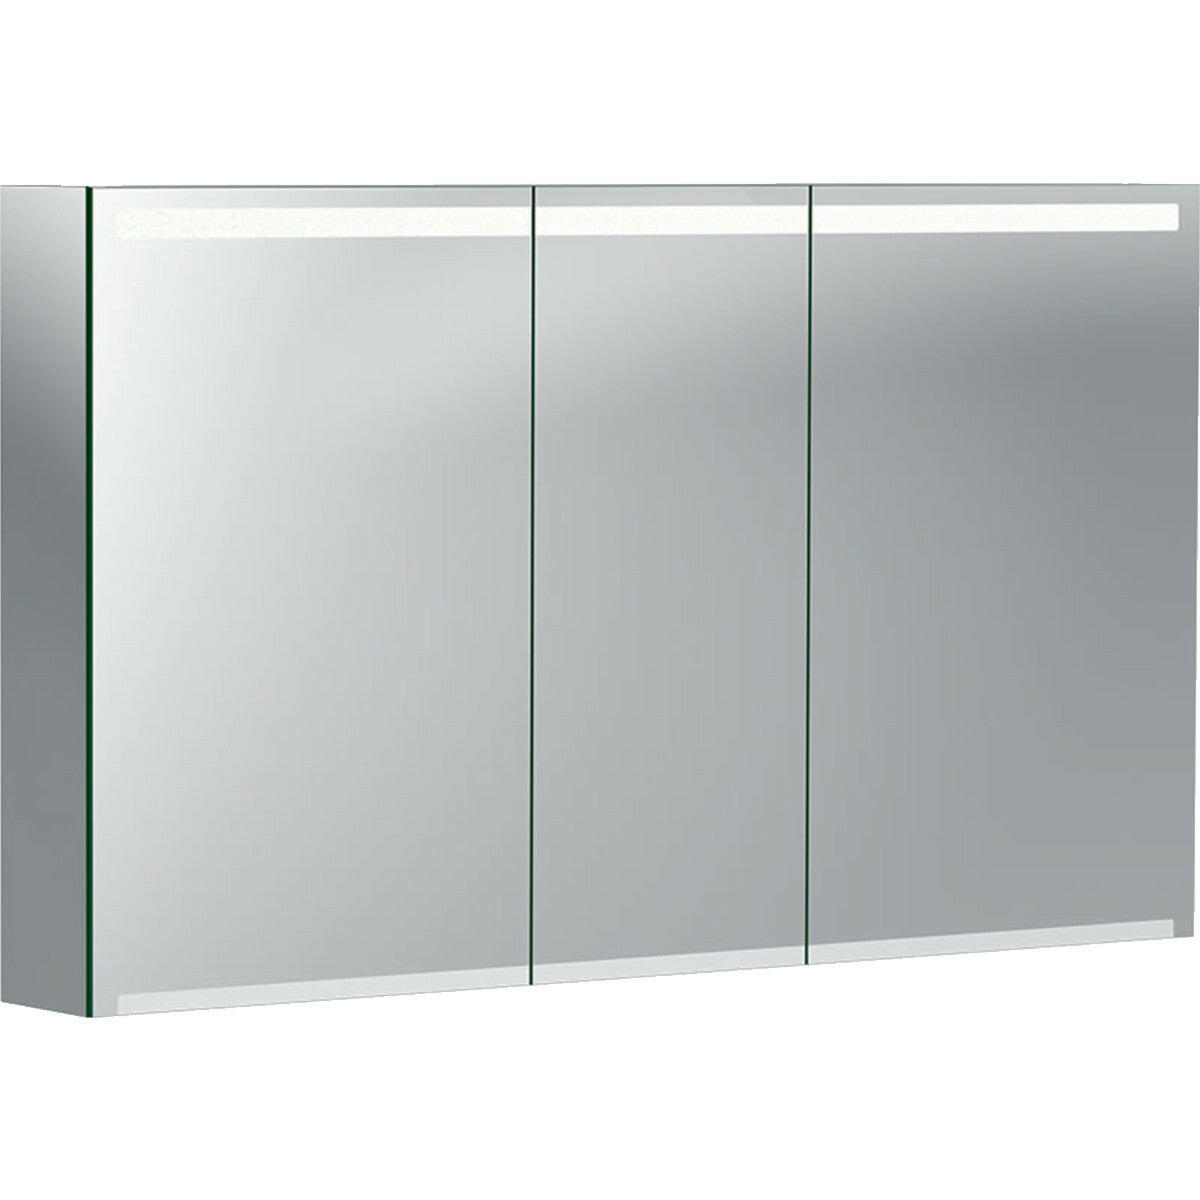 Geberit Option tükrös szekrény világítással, három ajtóval, 120x70x15cm-0